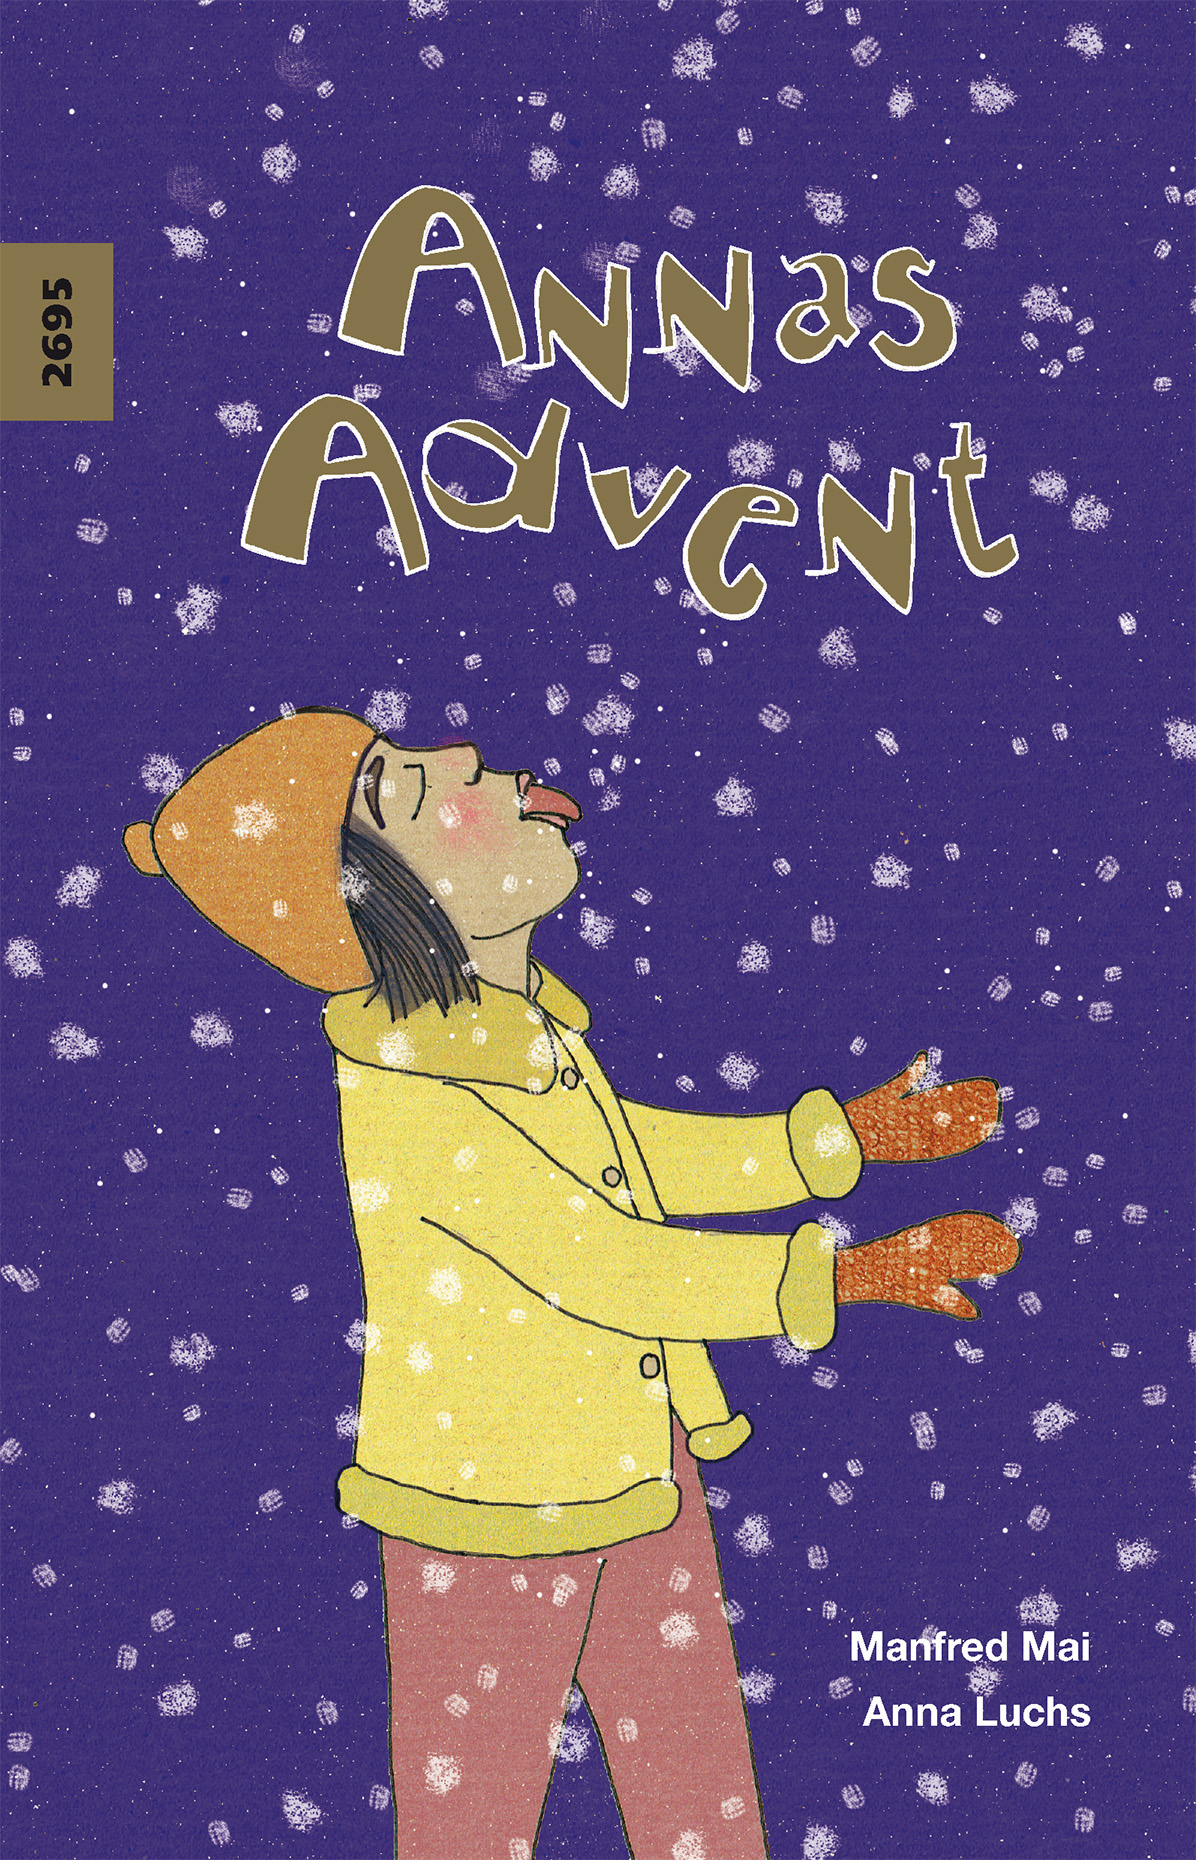 Annas Advent, ein Kinderbuch von Manfred Mai, Illustration von Anna Luchs, SJW Verlag, Adventskalenderbuch